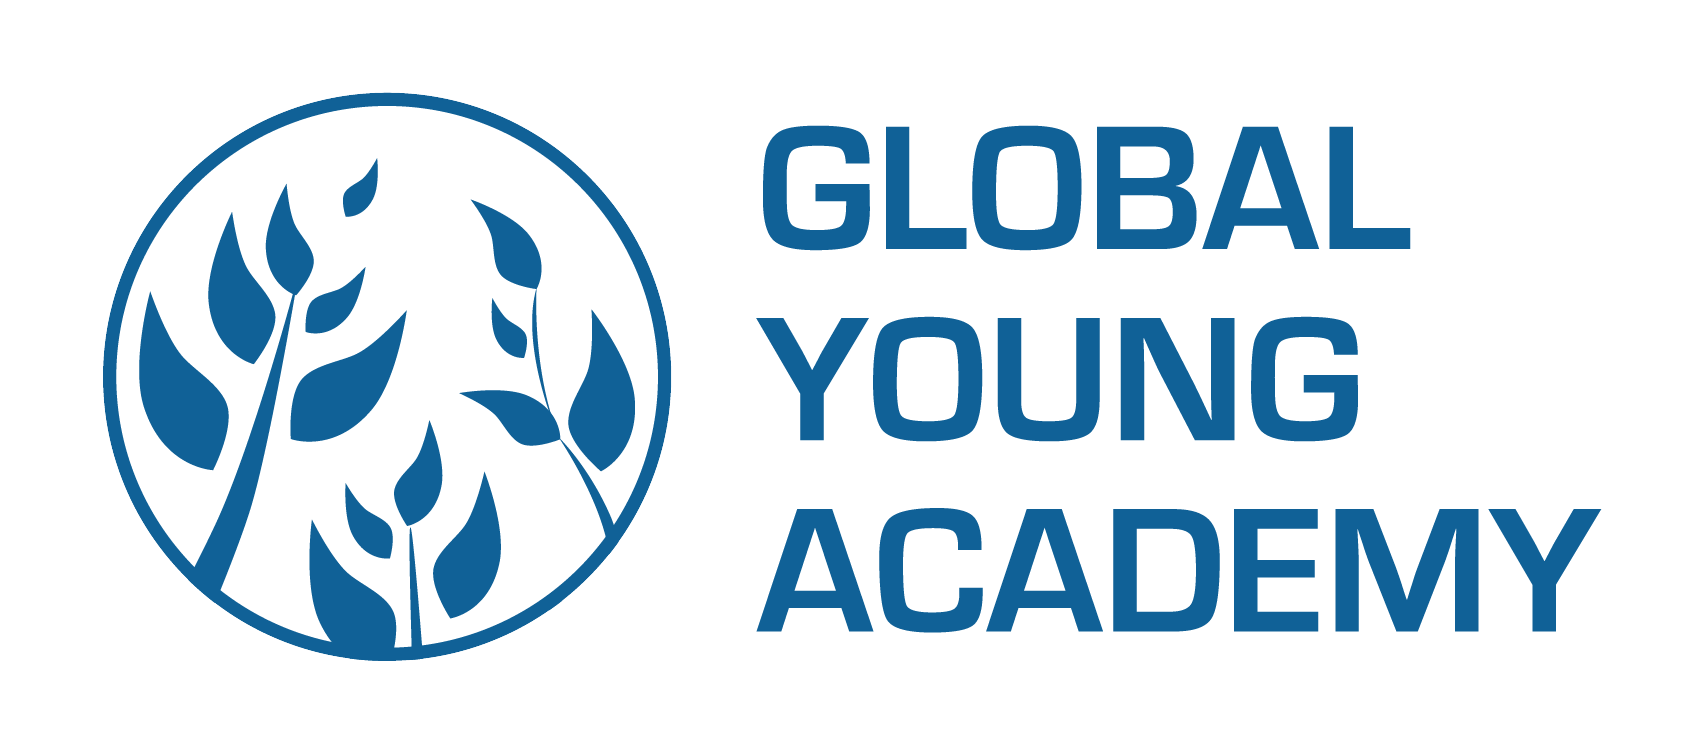 Global Young Academy lance un appel à candidature des nouveaux membres  jeunes chercheurs 2019/20 (pour l’assemblée générale annuelle de GYA en Inde)